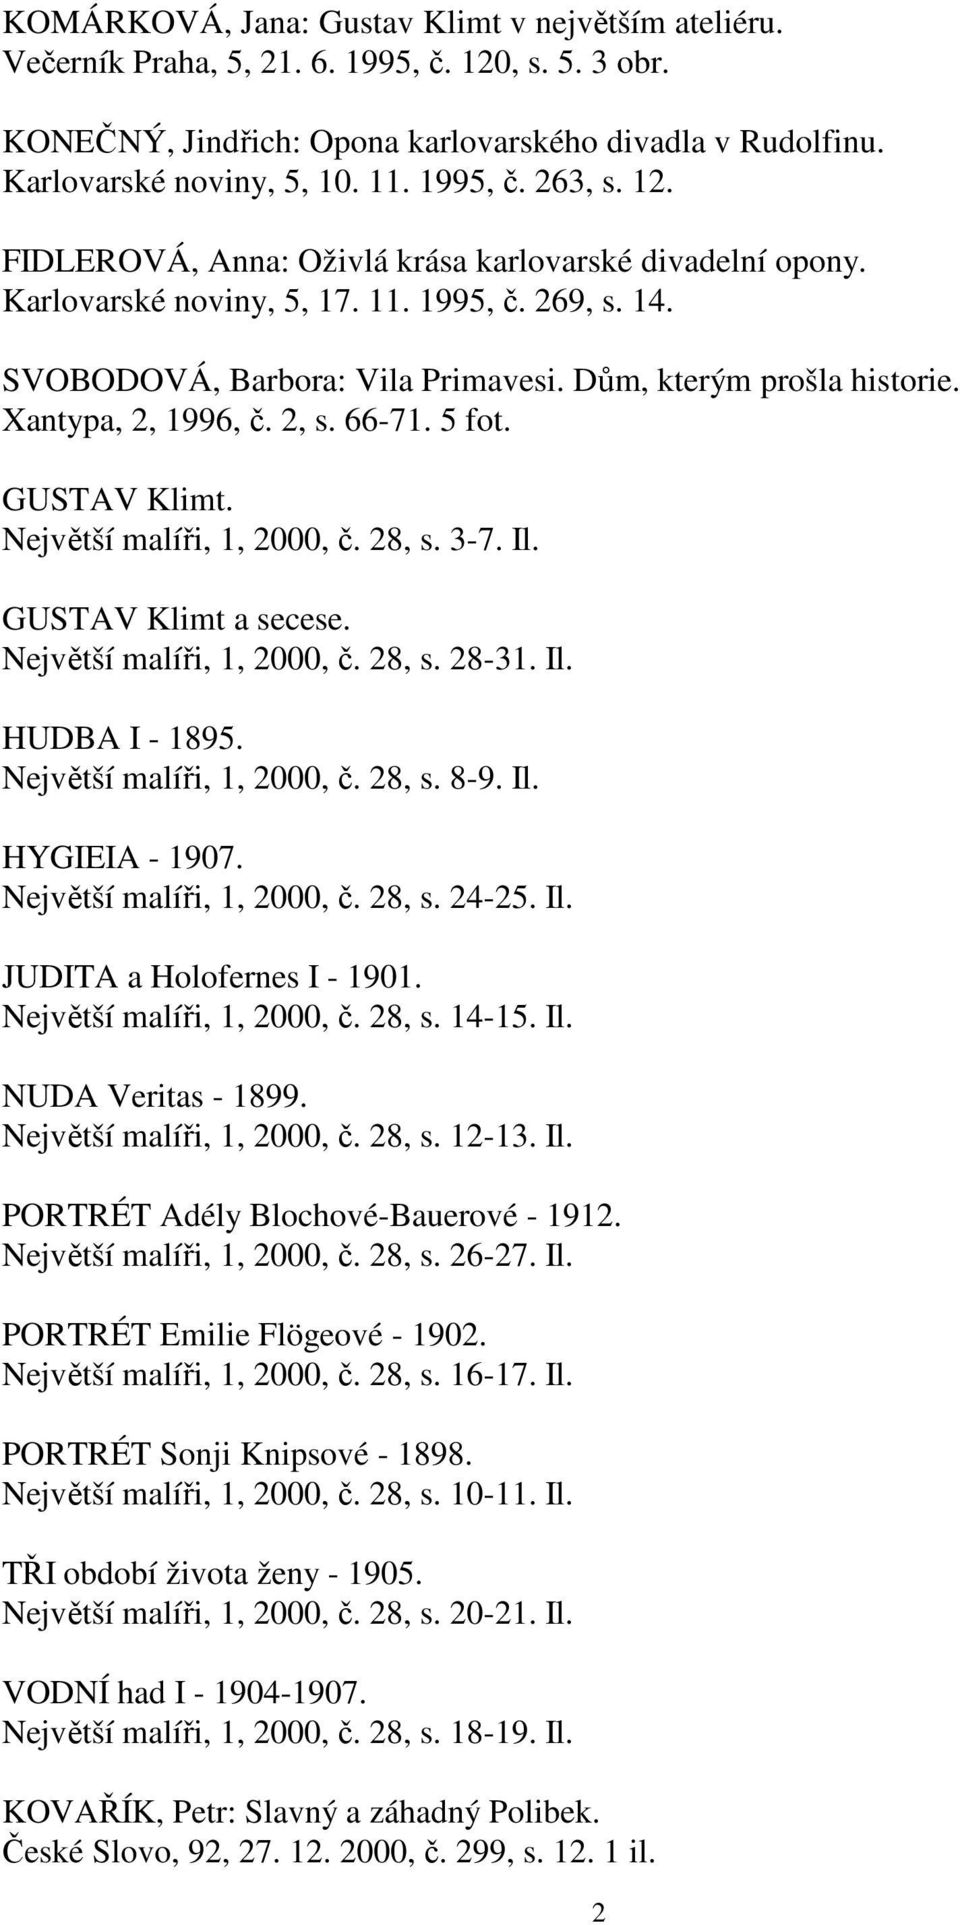 Xantypa, 2, 1996, č. 2, s. 66-71. 5 fot. GUSTAV Klimt. Největší malíři, 1, 2000, č. 28, s. 3-7. Il. GUSTAV Klimt a secese. Největší malíři, 1, 2000, č. 28, s. 28-31. Il. HUDBA I - 1895.